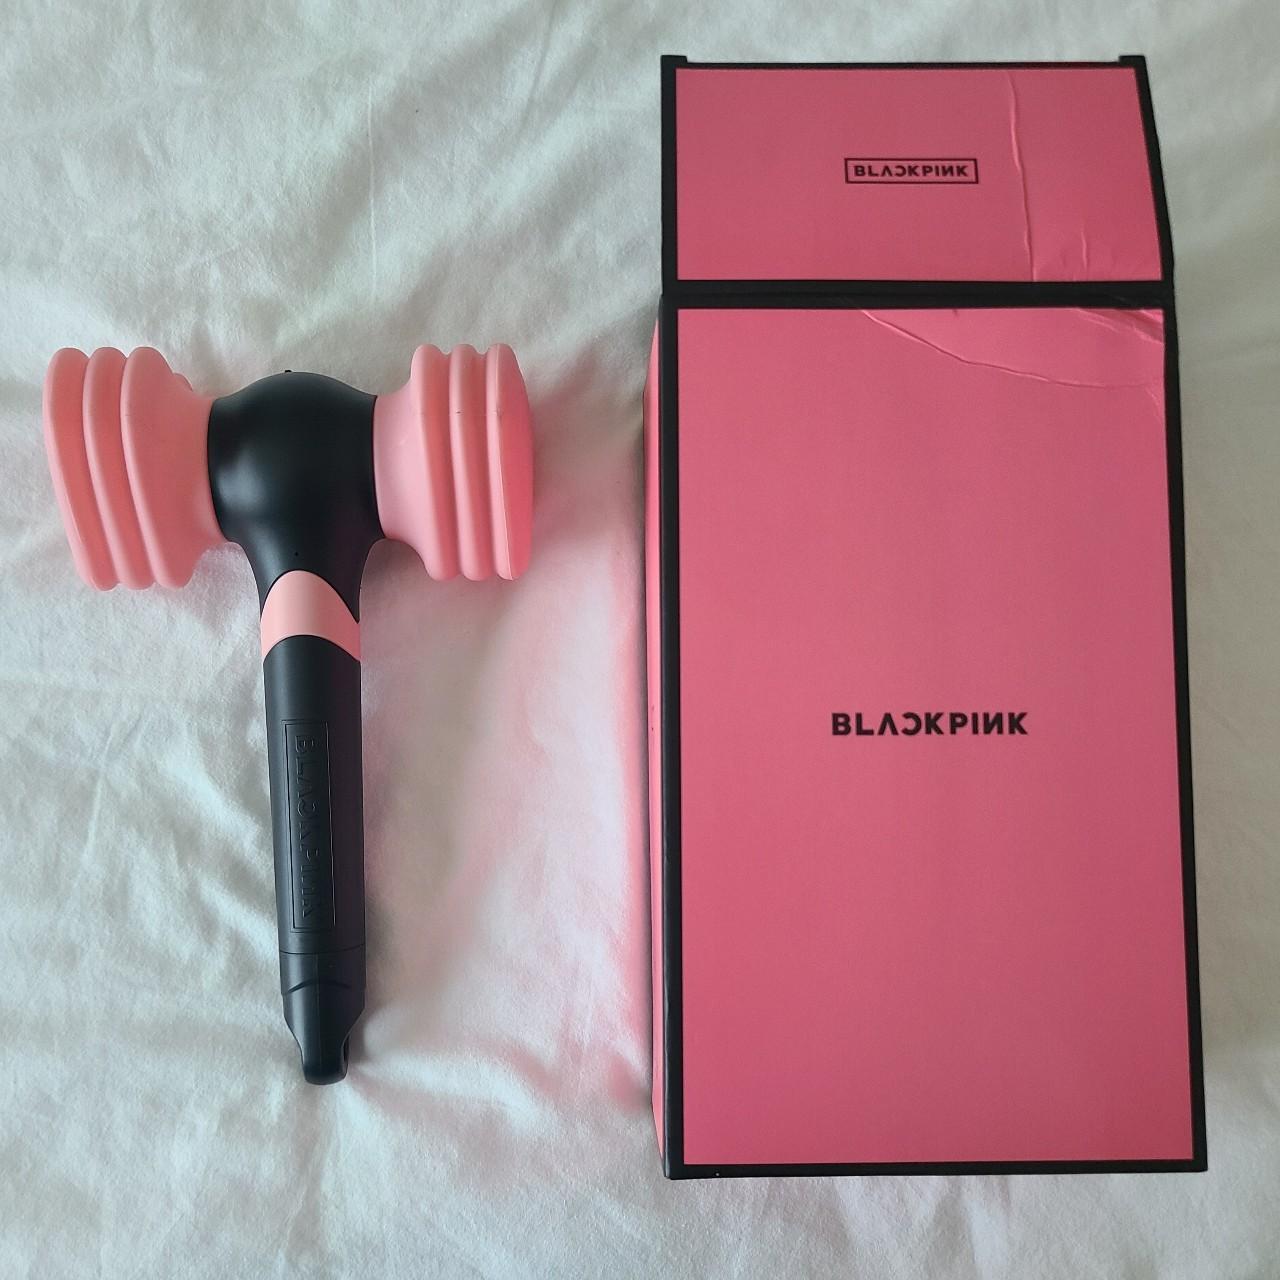 Blackpink - Official Light Stick Ver.2 [Hammerbong]